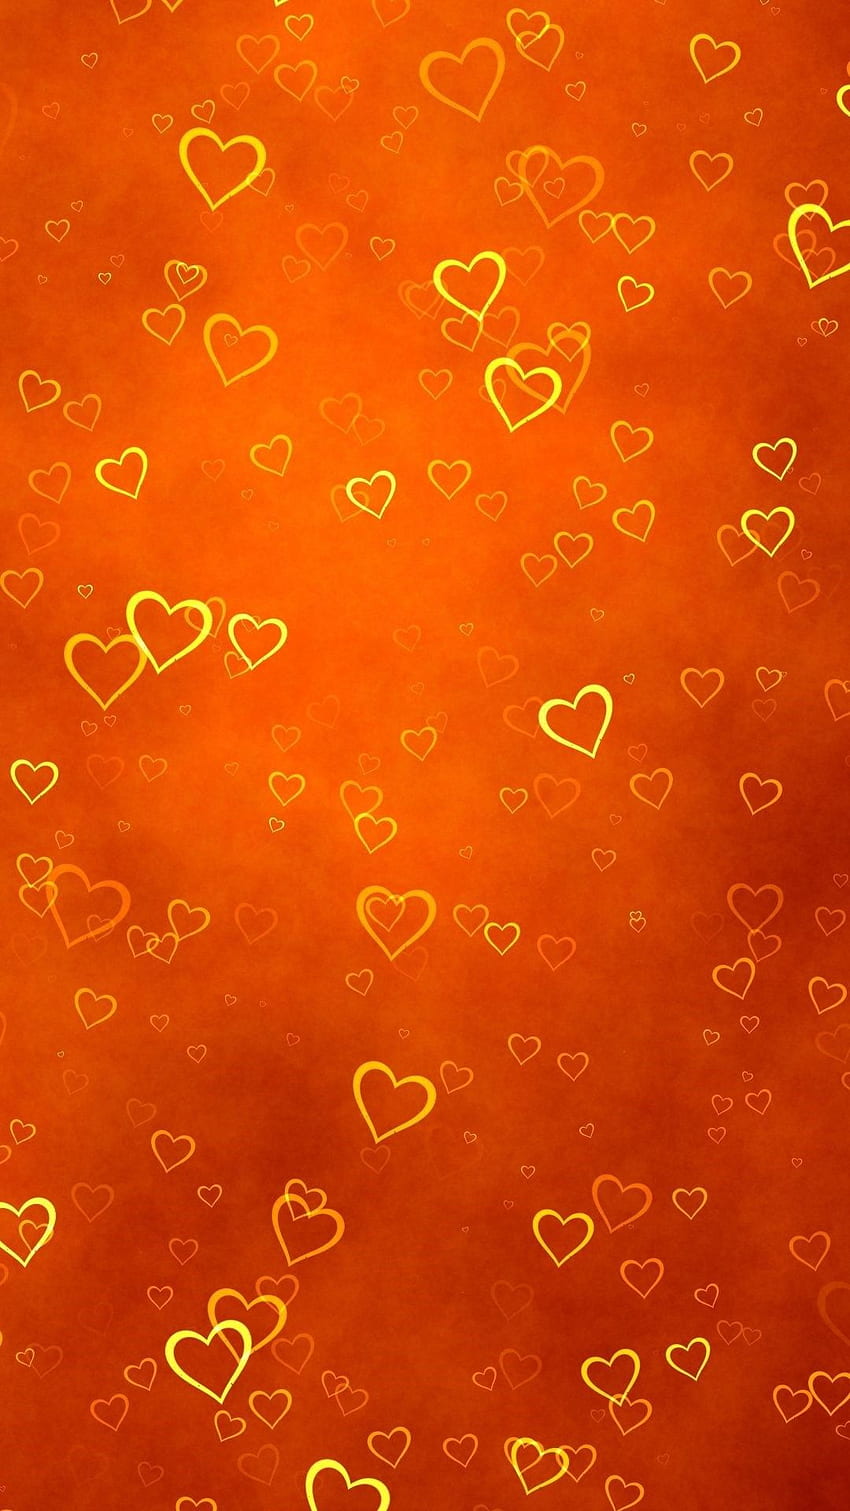 Bạn đang tìm kiếm một hình nền iPhone tuyệt đẹp và độ phân giải cao? Chúng tôi có những tấm hình tuyệt vời phù hợp cho bạn, bao gồm cả mẫu orange heart wallpaper. Cùng khám phá thư viện ảnh của chúng tôi trên trang web chia sẻ đồ họa Pxfuel để tìm kiếm trải nghiệm thú vị nhất nhé!